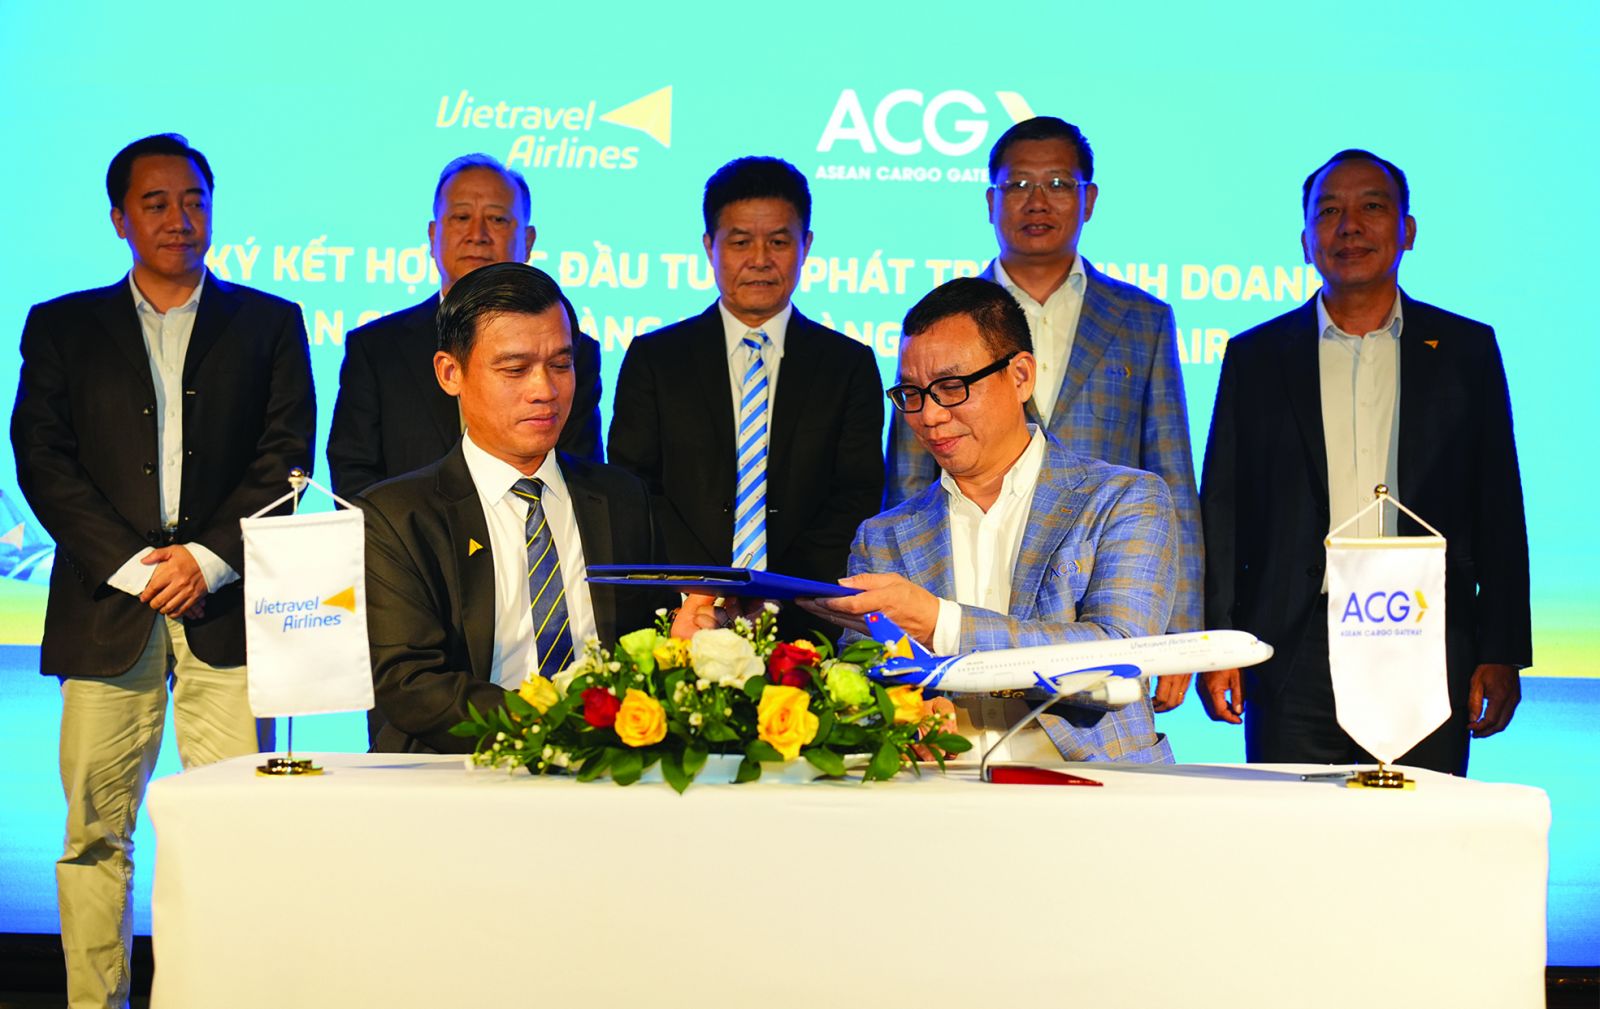  Vietravel Airlines và Asean Cargo Gateway (ACG) chính thức công bố hợp tác đầu tư phát triển thị trường hàng hoá hàng không.